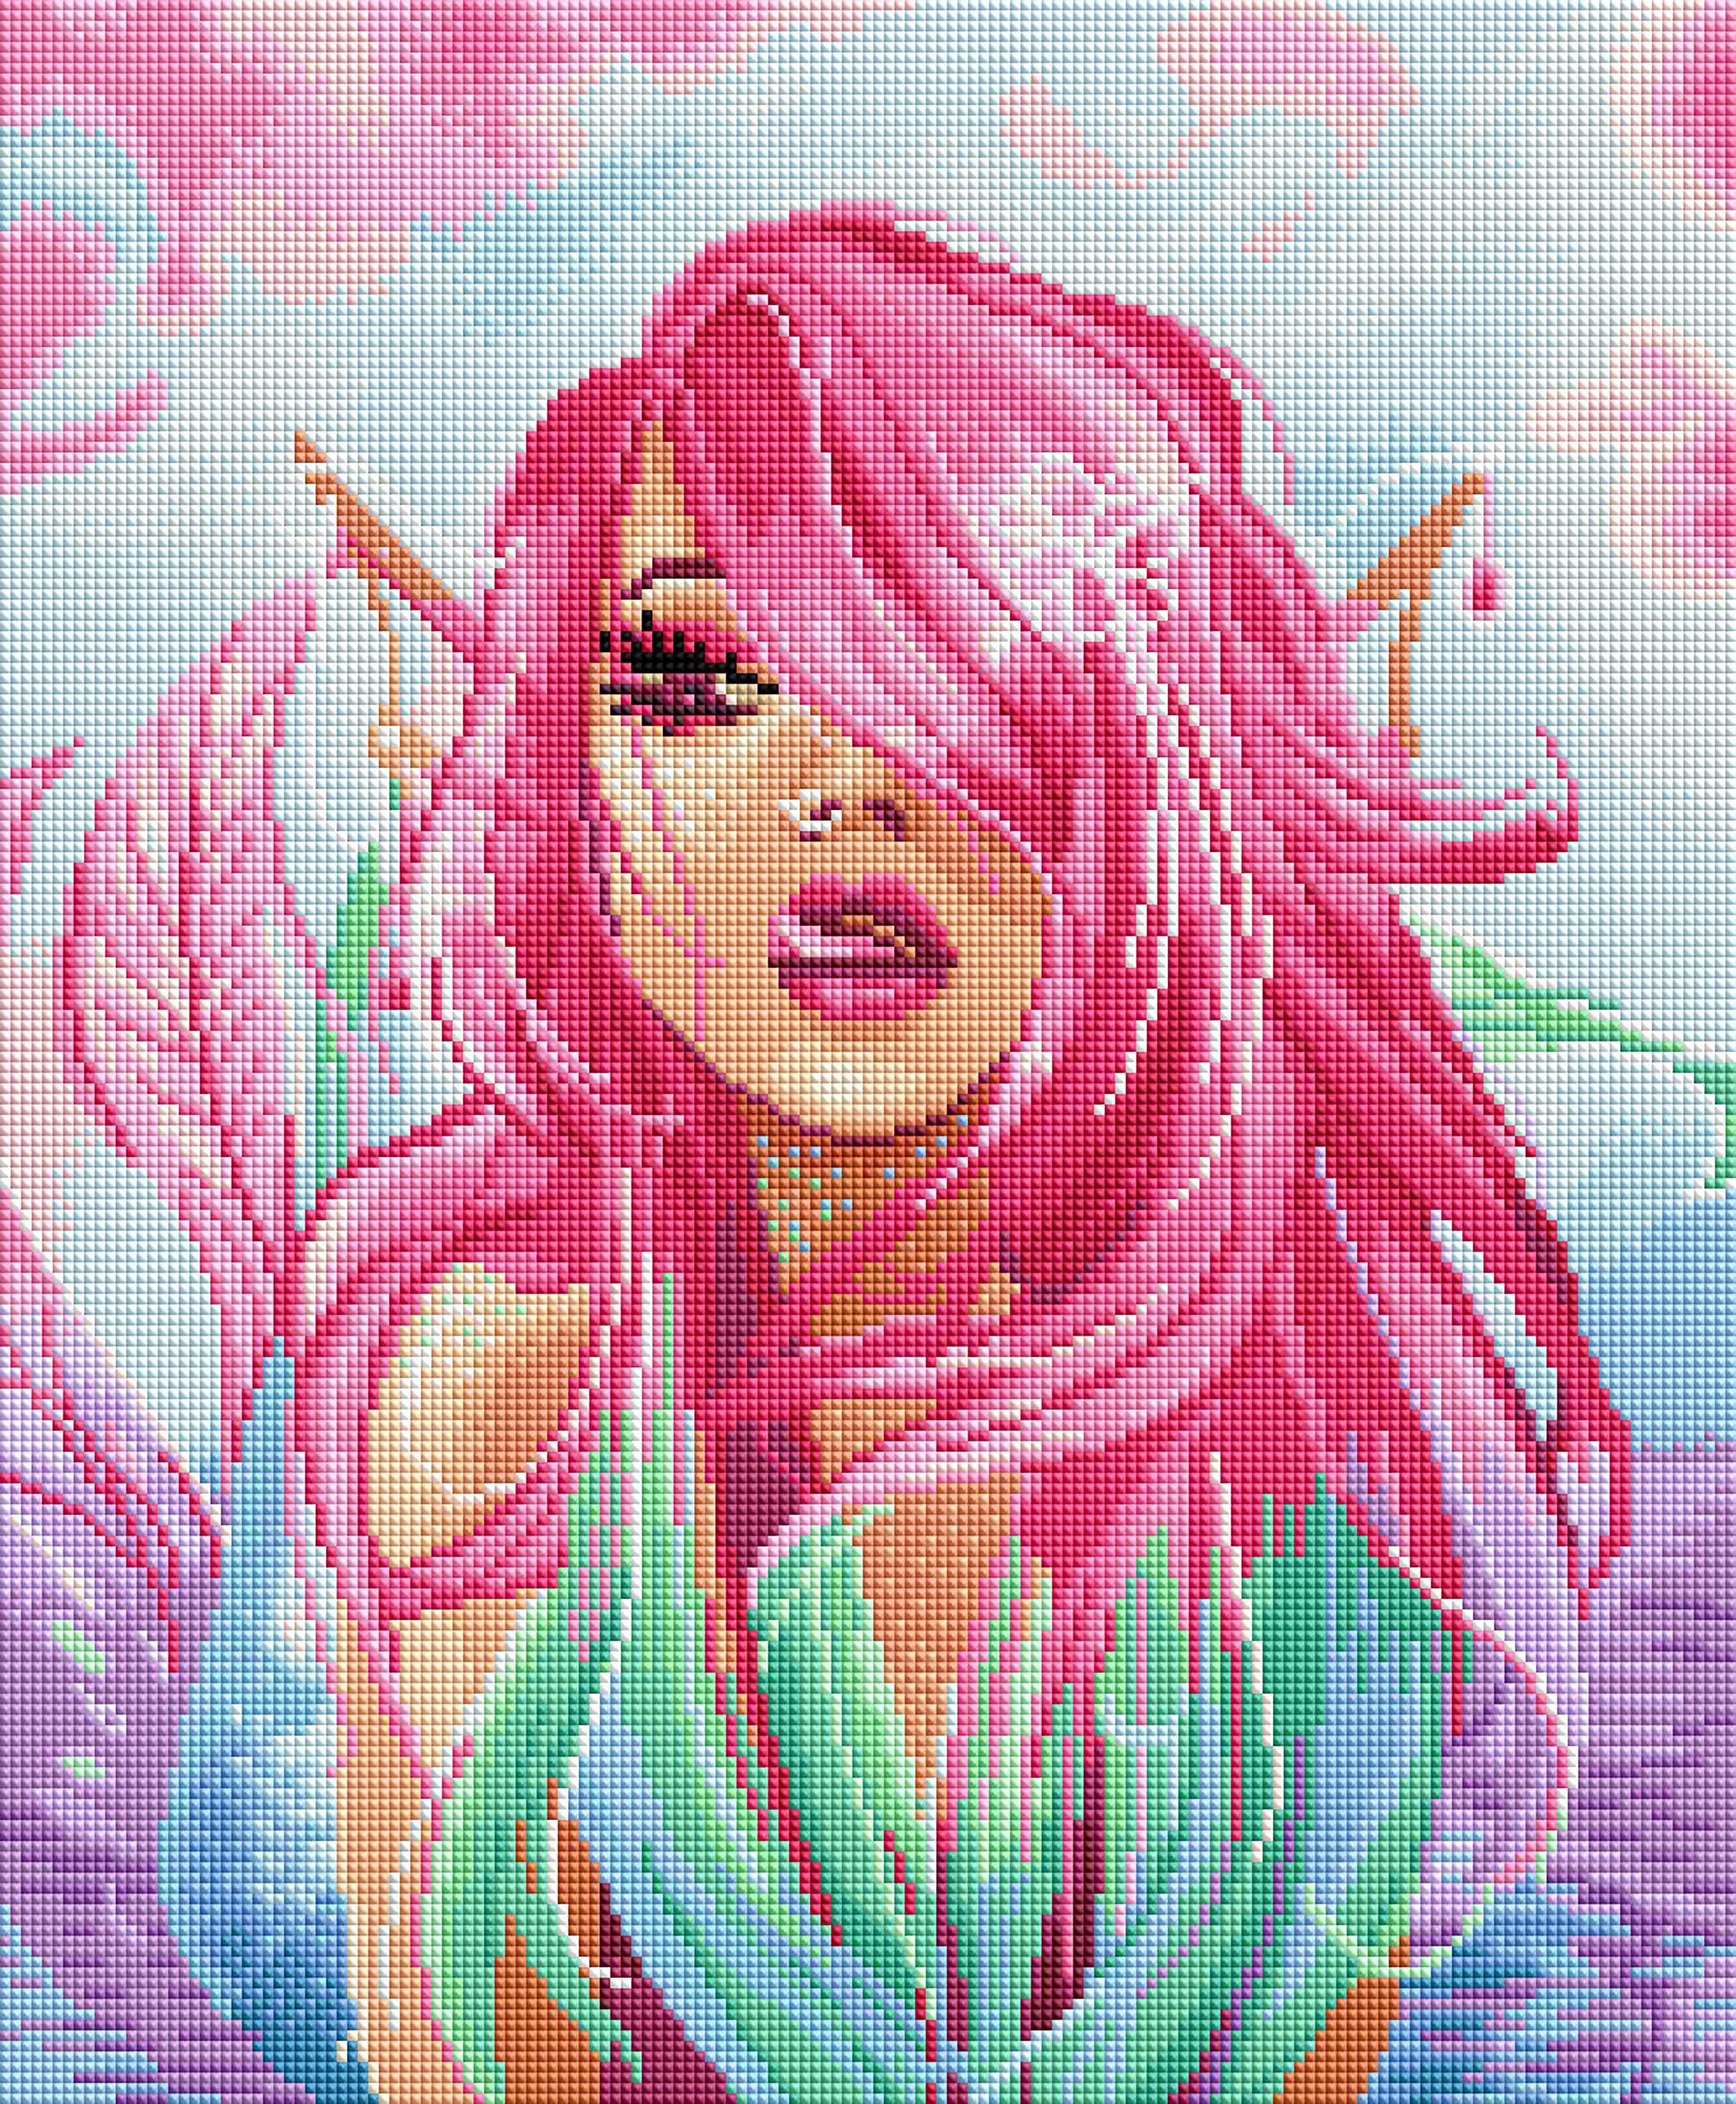 Mermaid Princess – Diamond Art Club